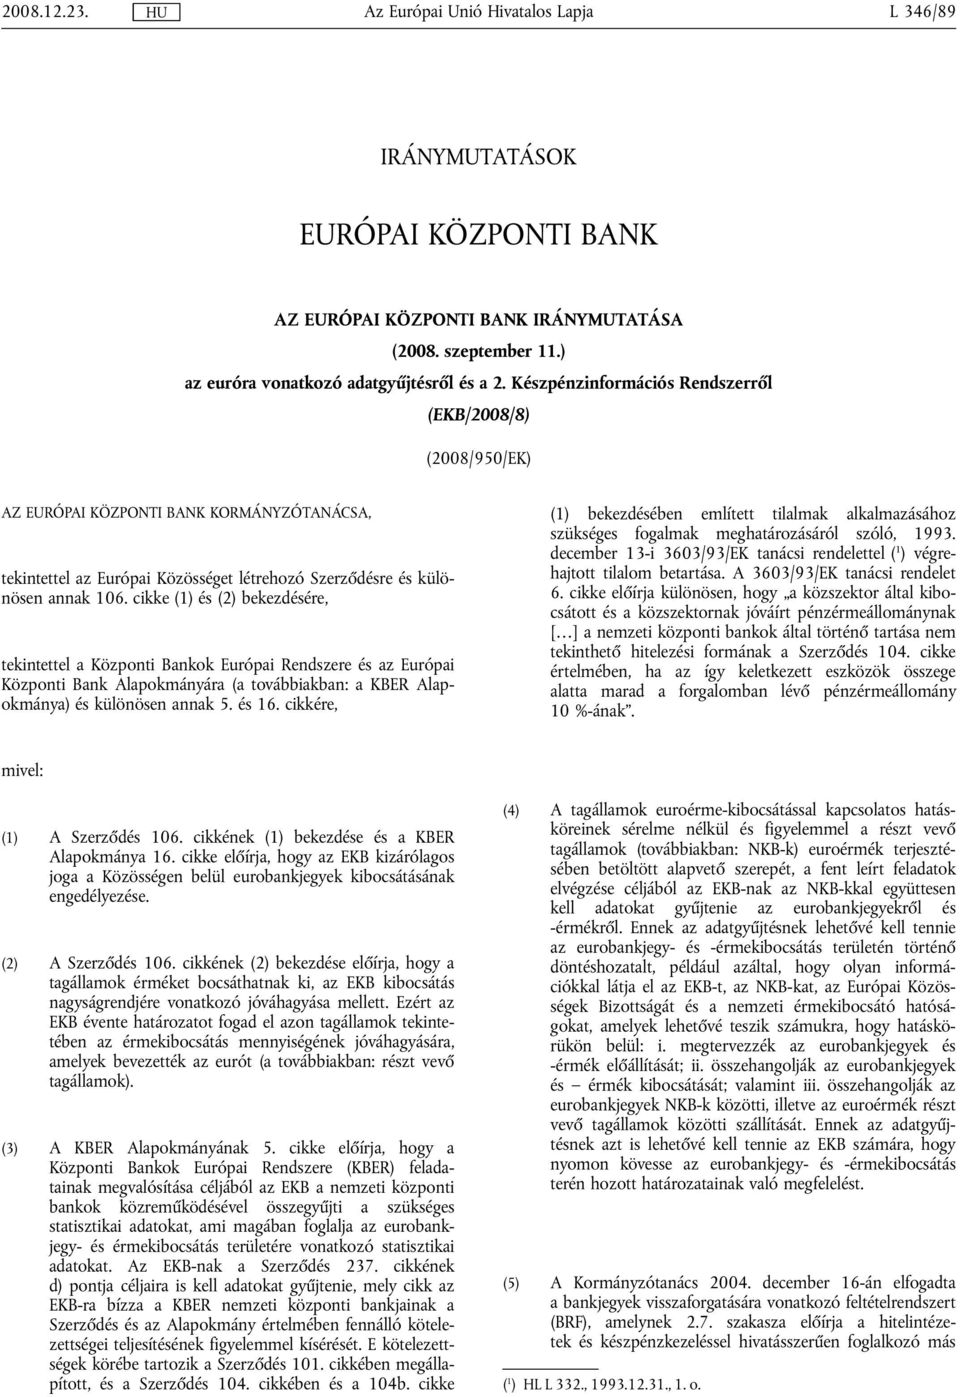 cikke (1) és (2) bekezdésére, ekineel a Közponi Bankok Európai Rendszere és az Európai Közponi Bank Alapokmányára (a ovábbiakban: a KBER Alapokmánya) és különösen annak 5. és 16.